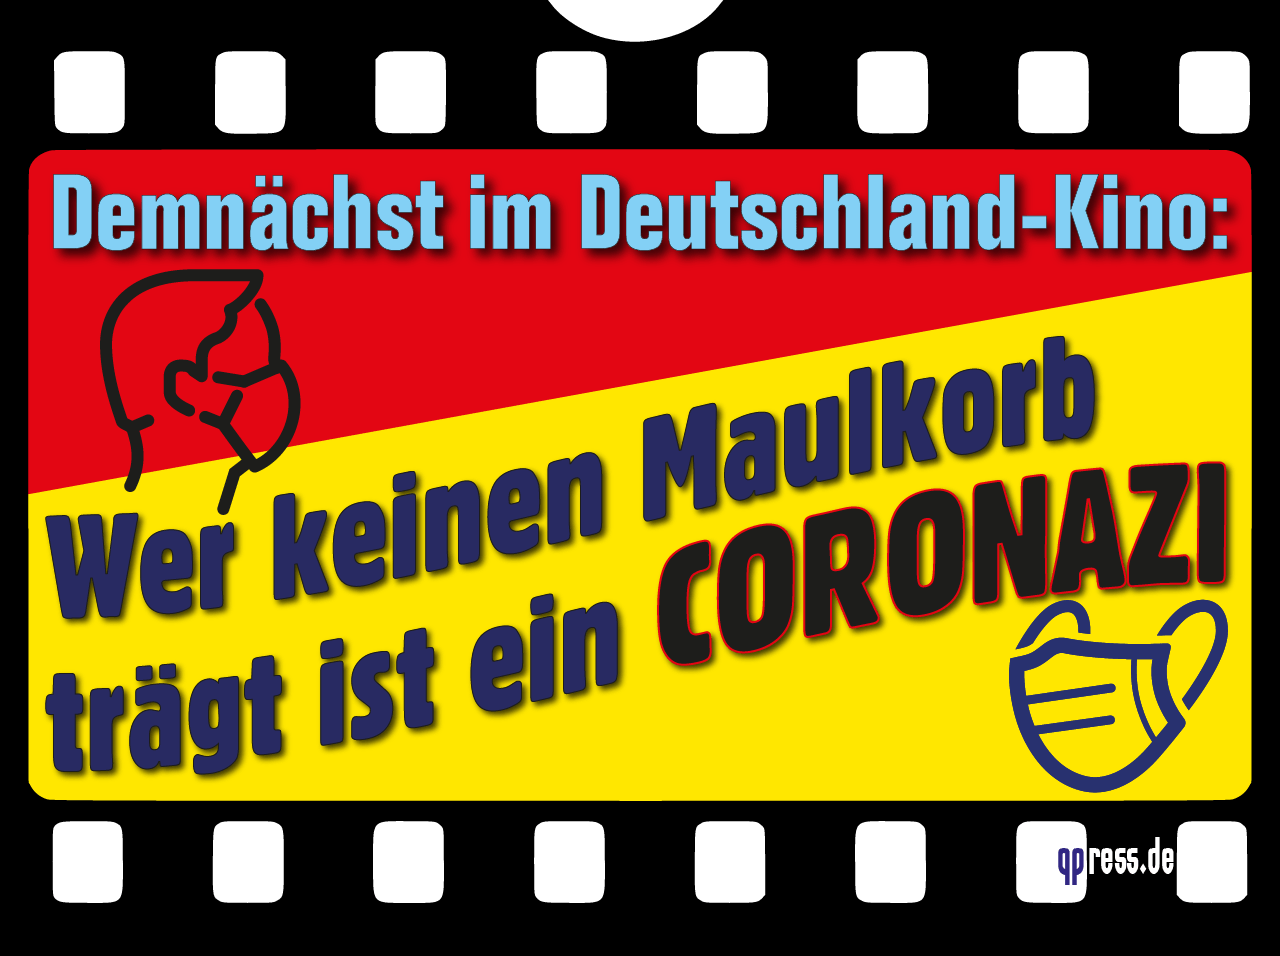 Deutschland Kino wer keinen Maulkorb traegt ist coronazi qpress-01